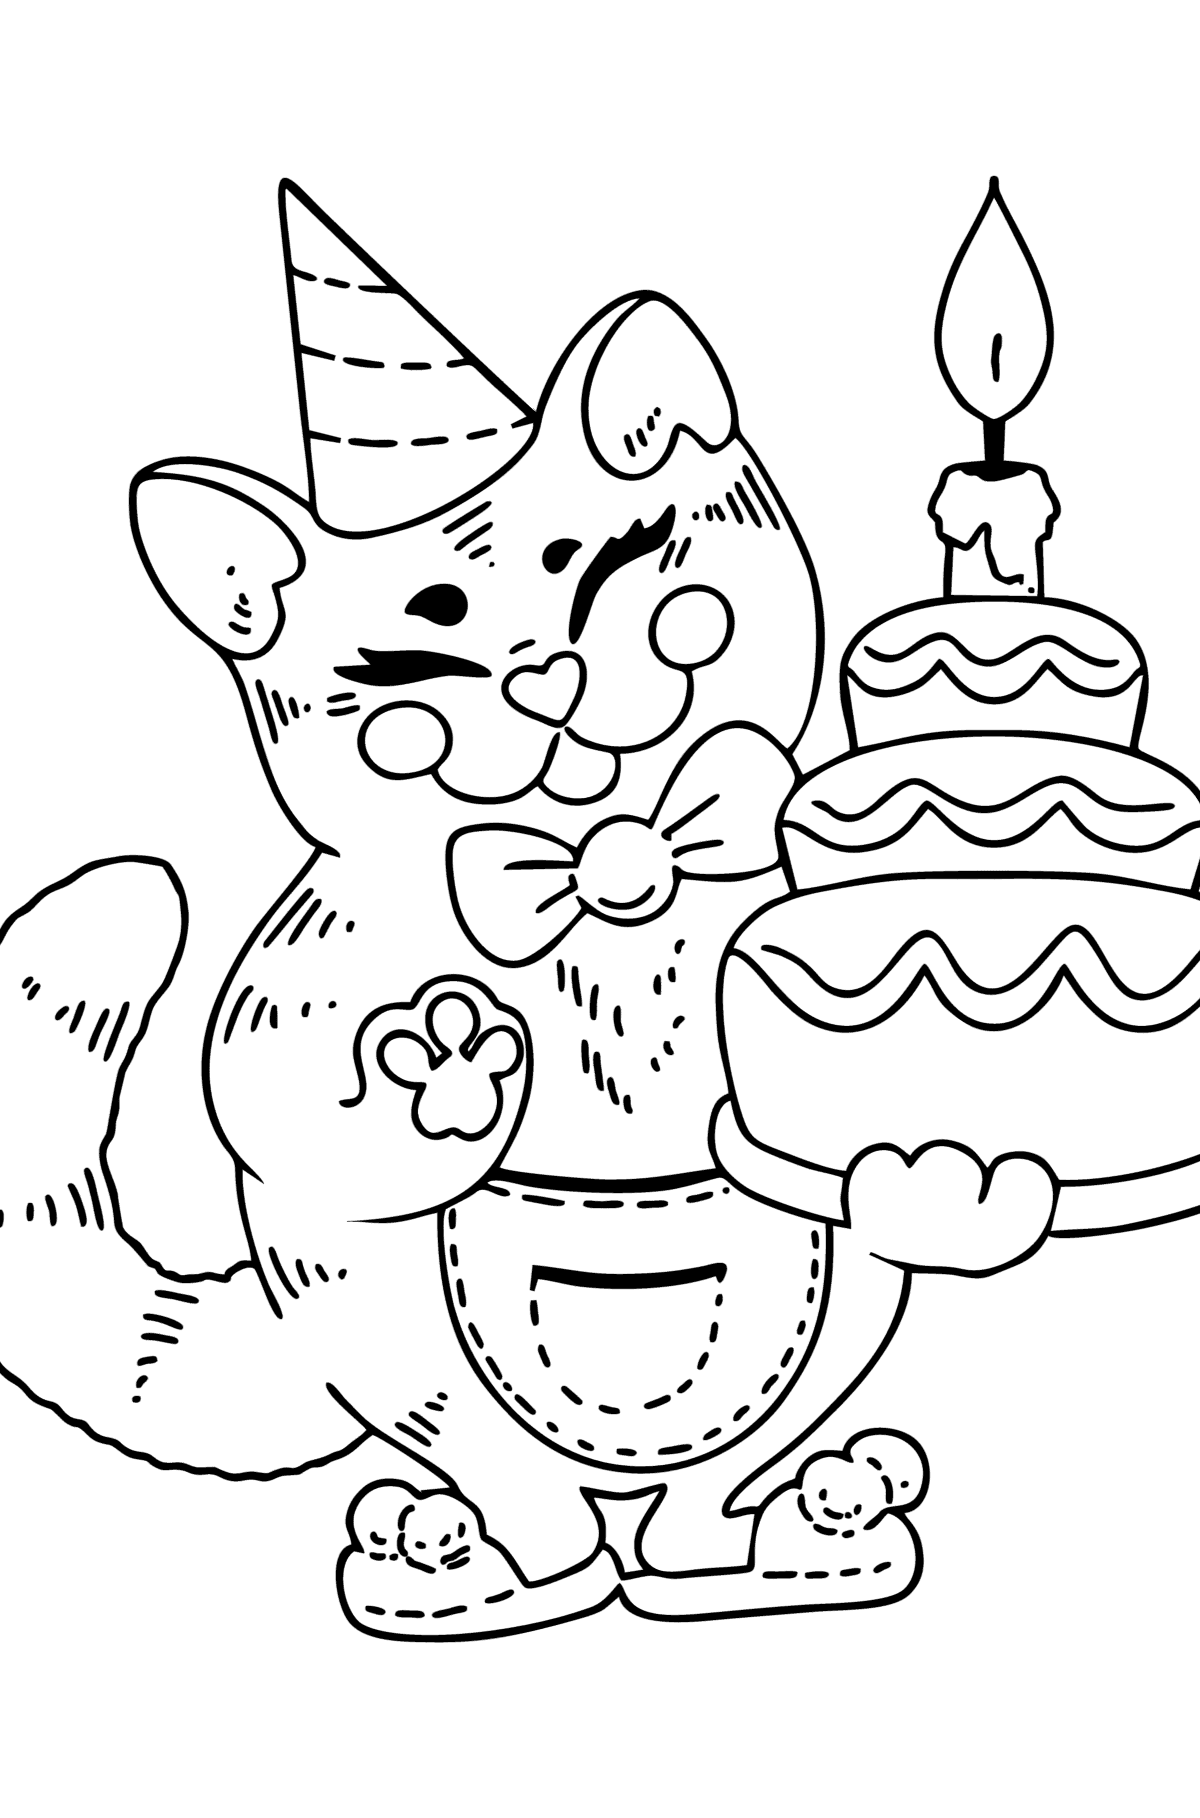 Kleurplaat kat verjaardag - kleurplaten voor kinderen